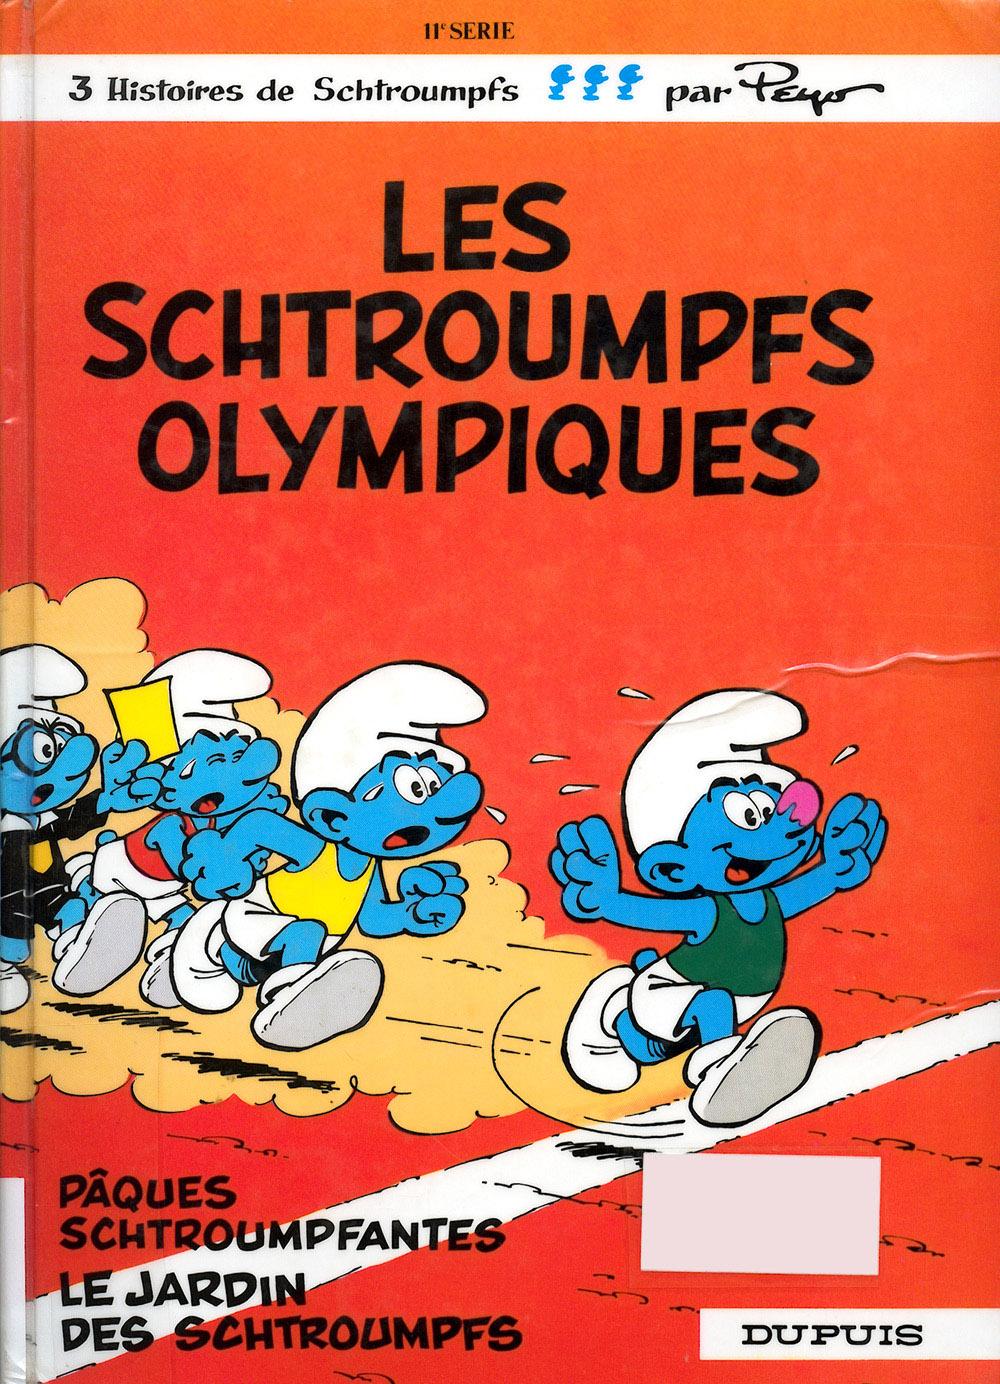 The Olympic Smurfs | Smurfs Wiki | FANDOM powered by Wikia